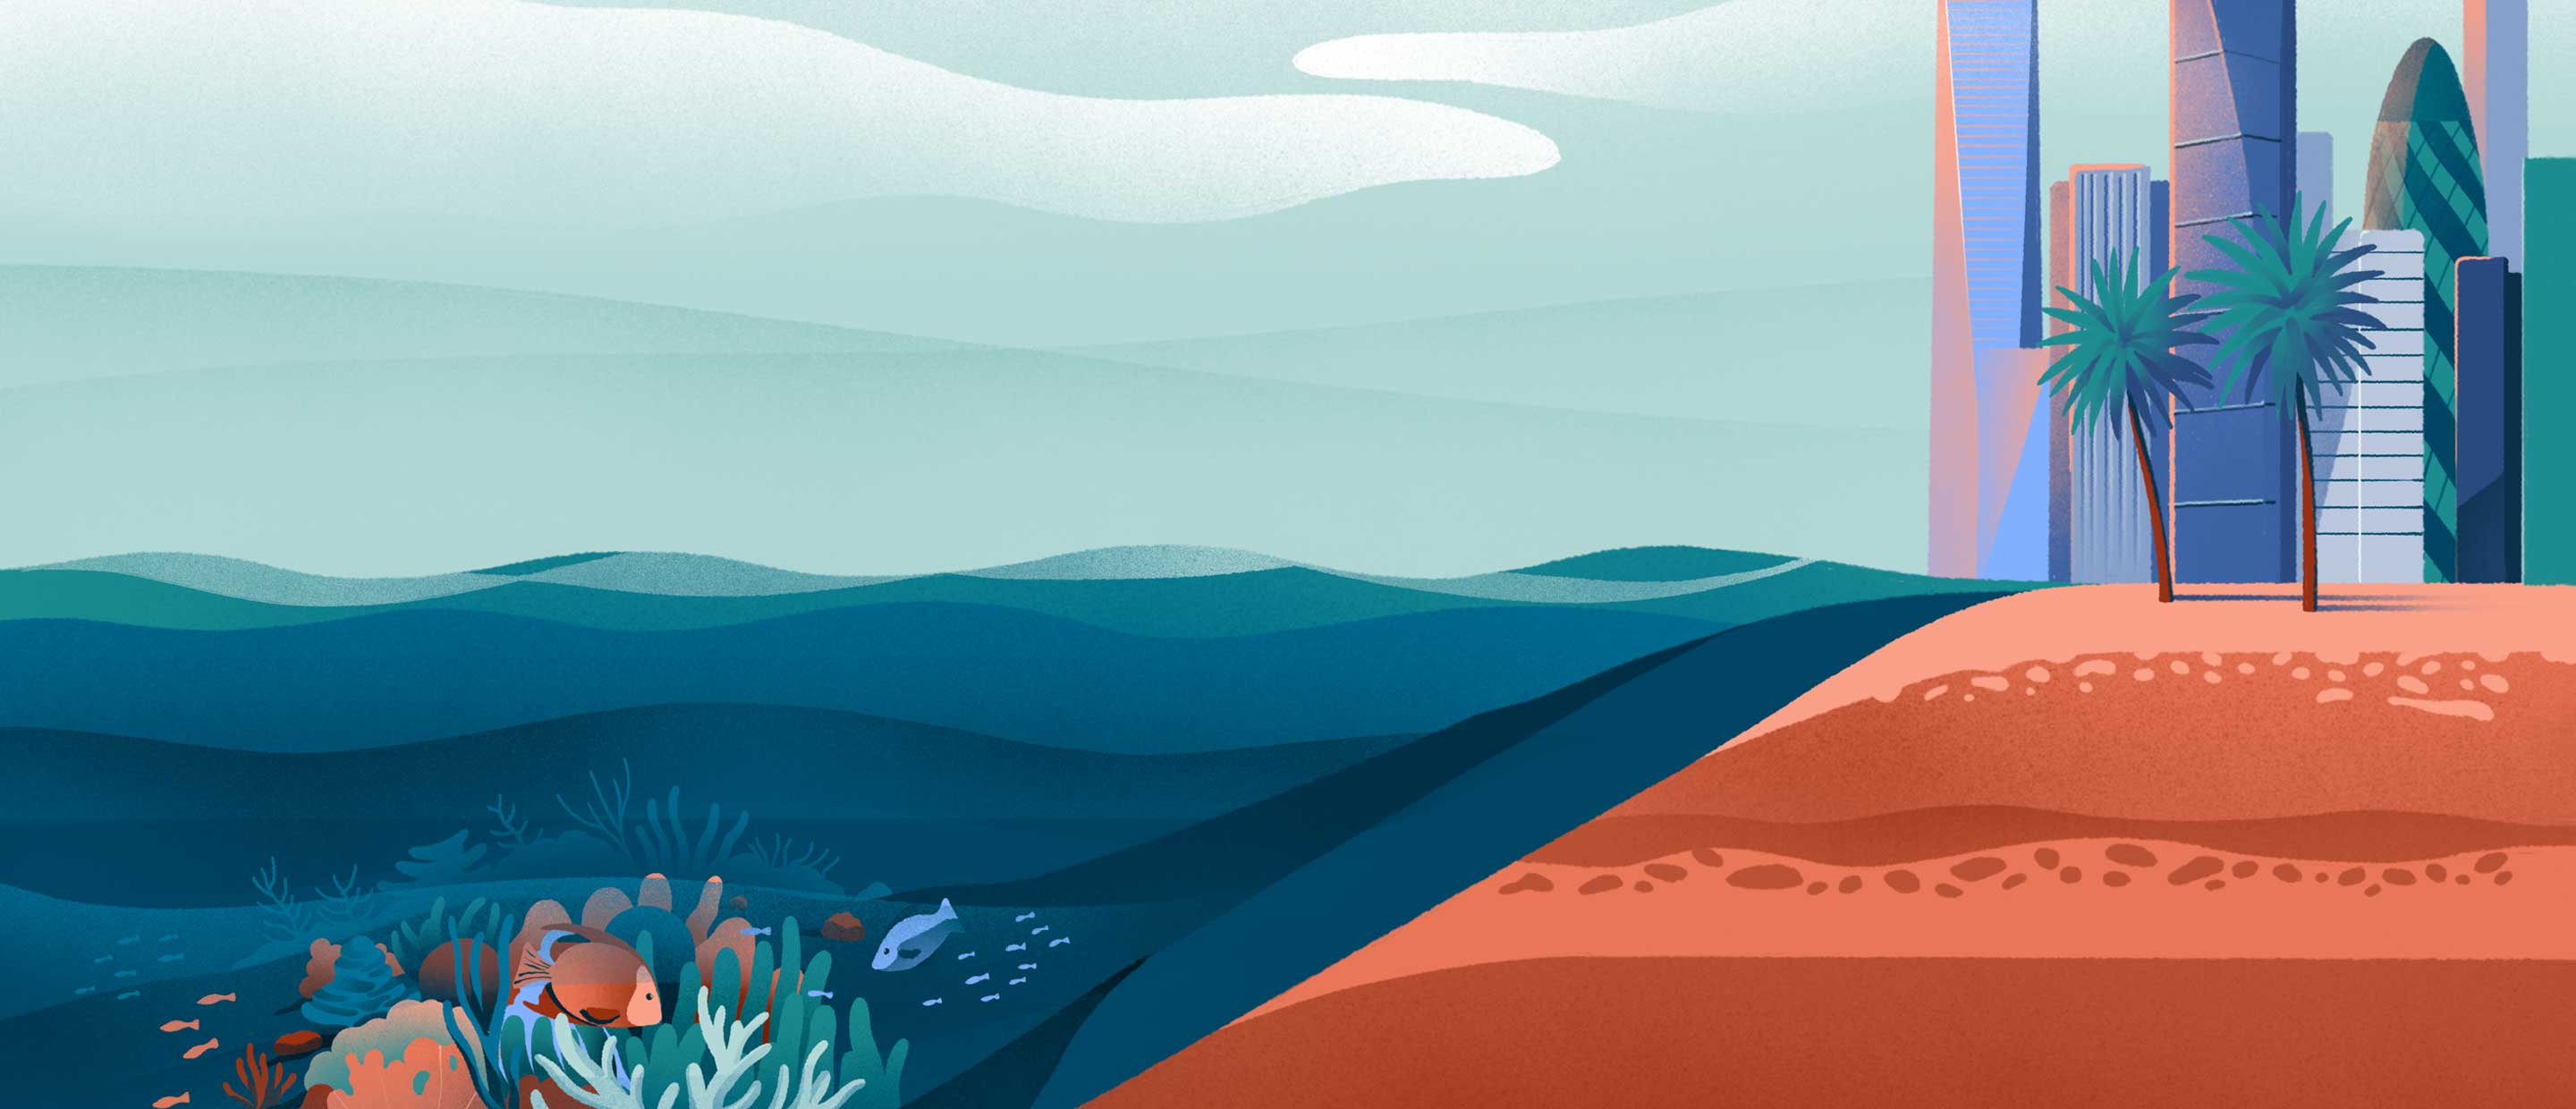 ocean-resilience-philanthropy-fund.jpg